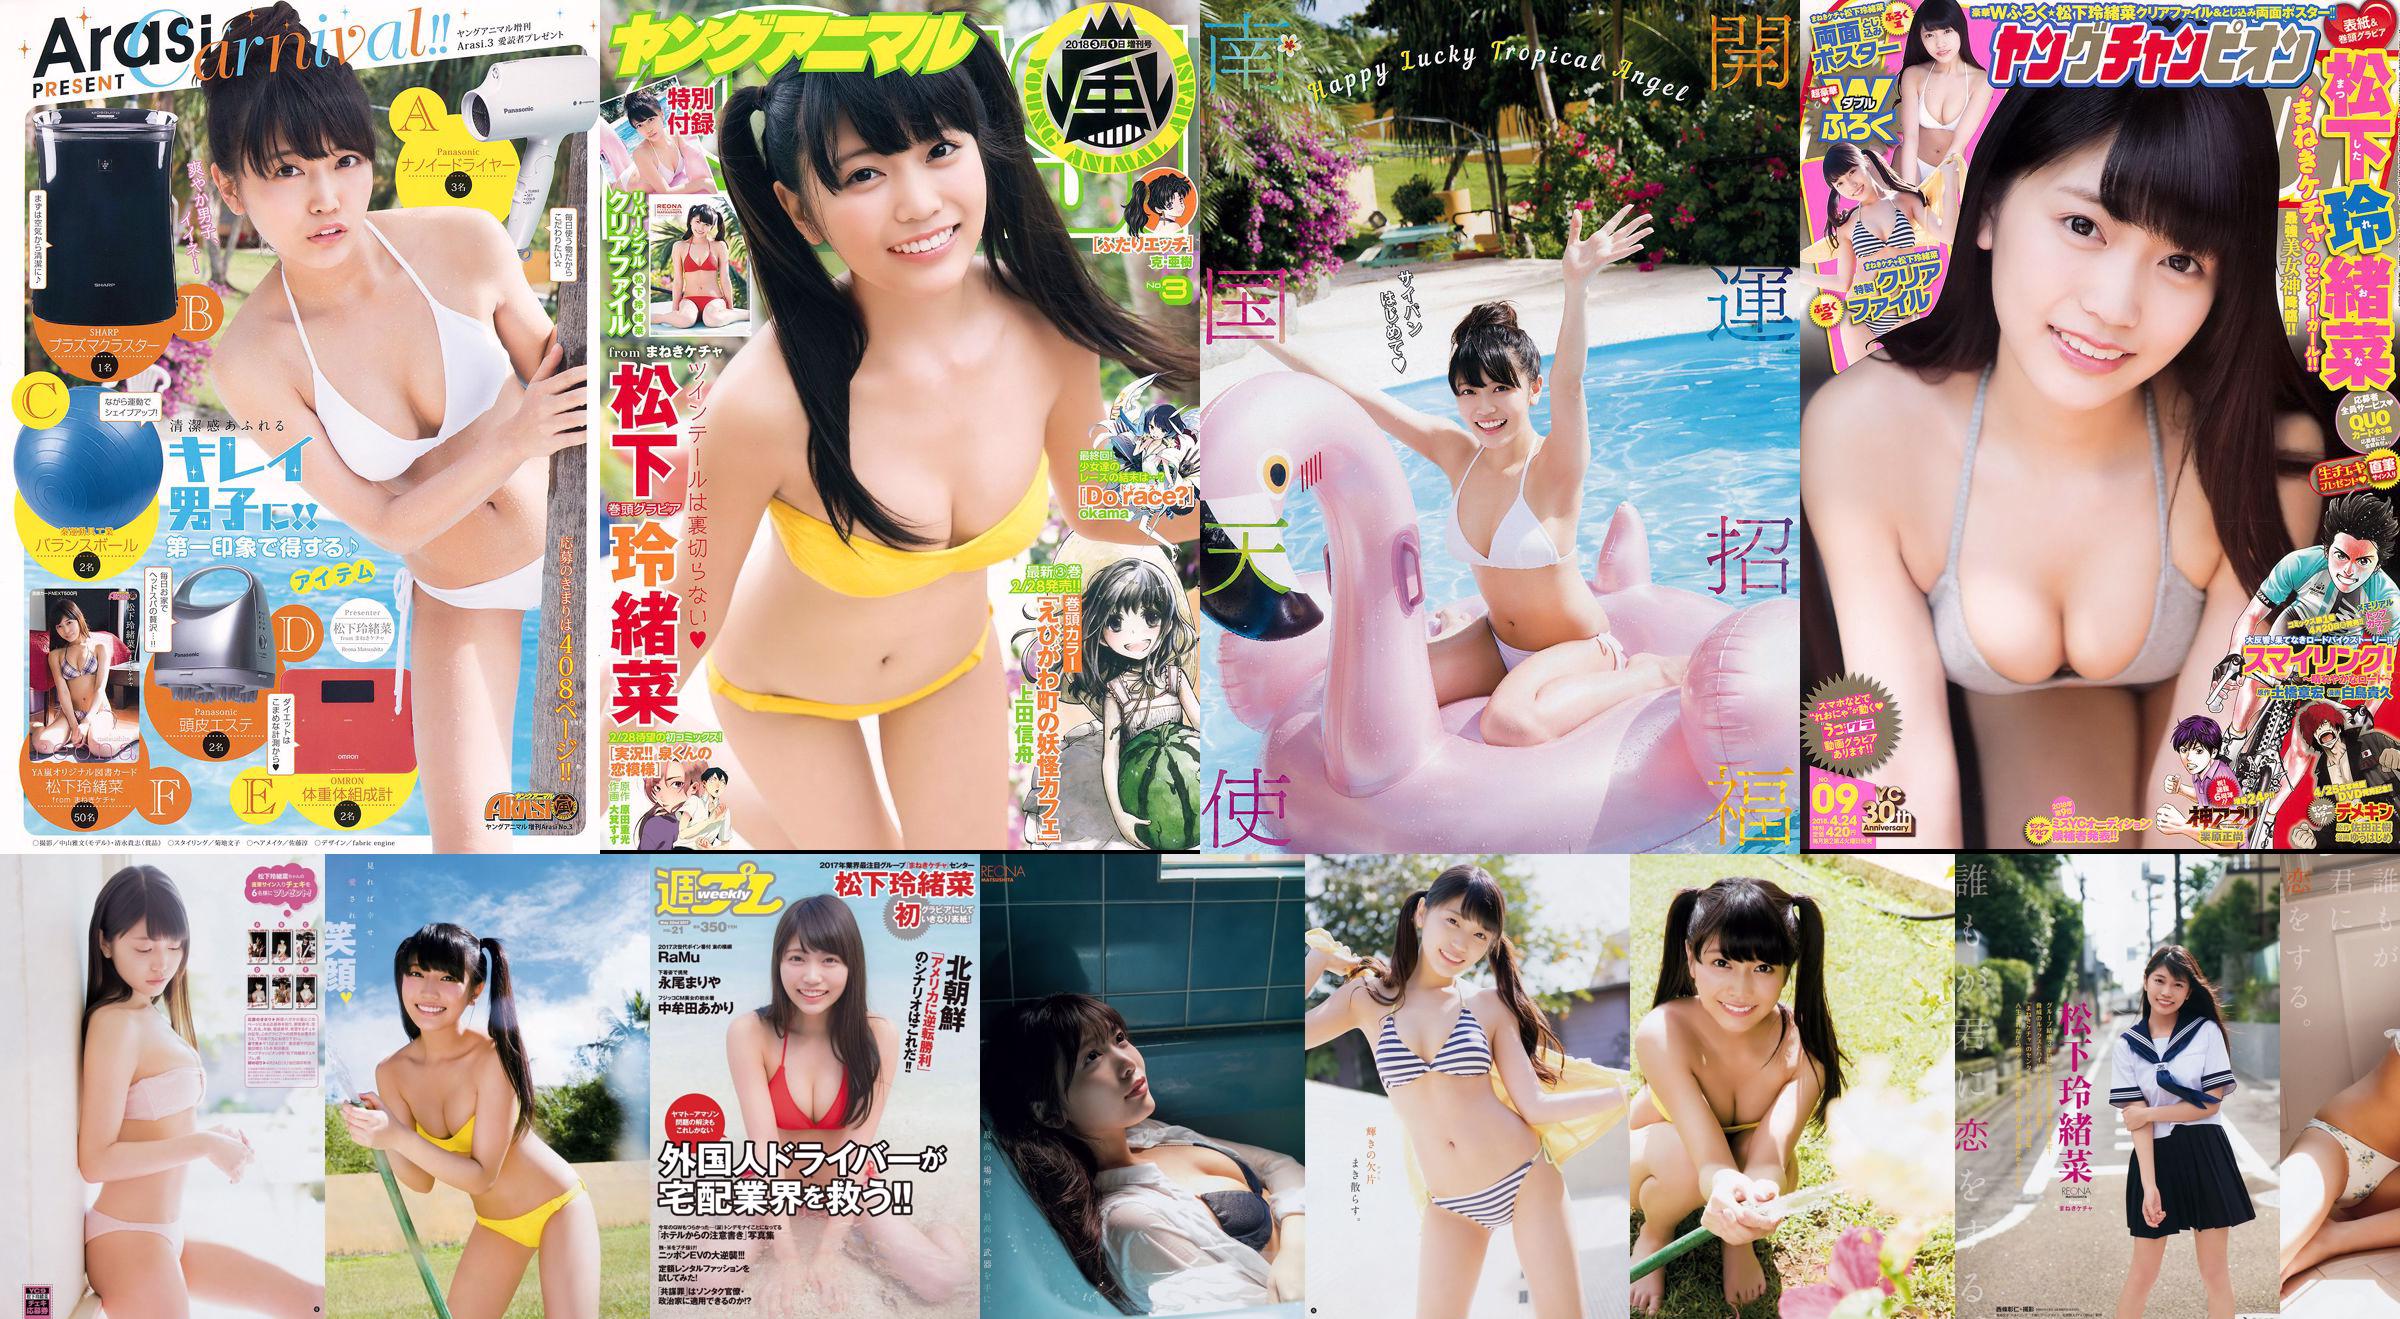 Reona Matsushita RaMu Akari Takamuta Mariya Nagao Suzuka Akimoto Michiko Tanaka Hazuki Nishioka [Wekelijkse Playboy] 2017 No.21 Foto No.87a686 Pagina 8